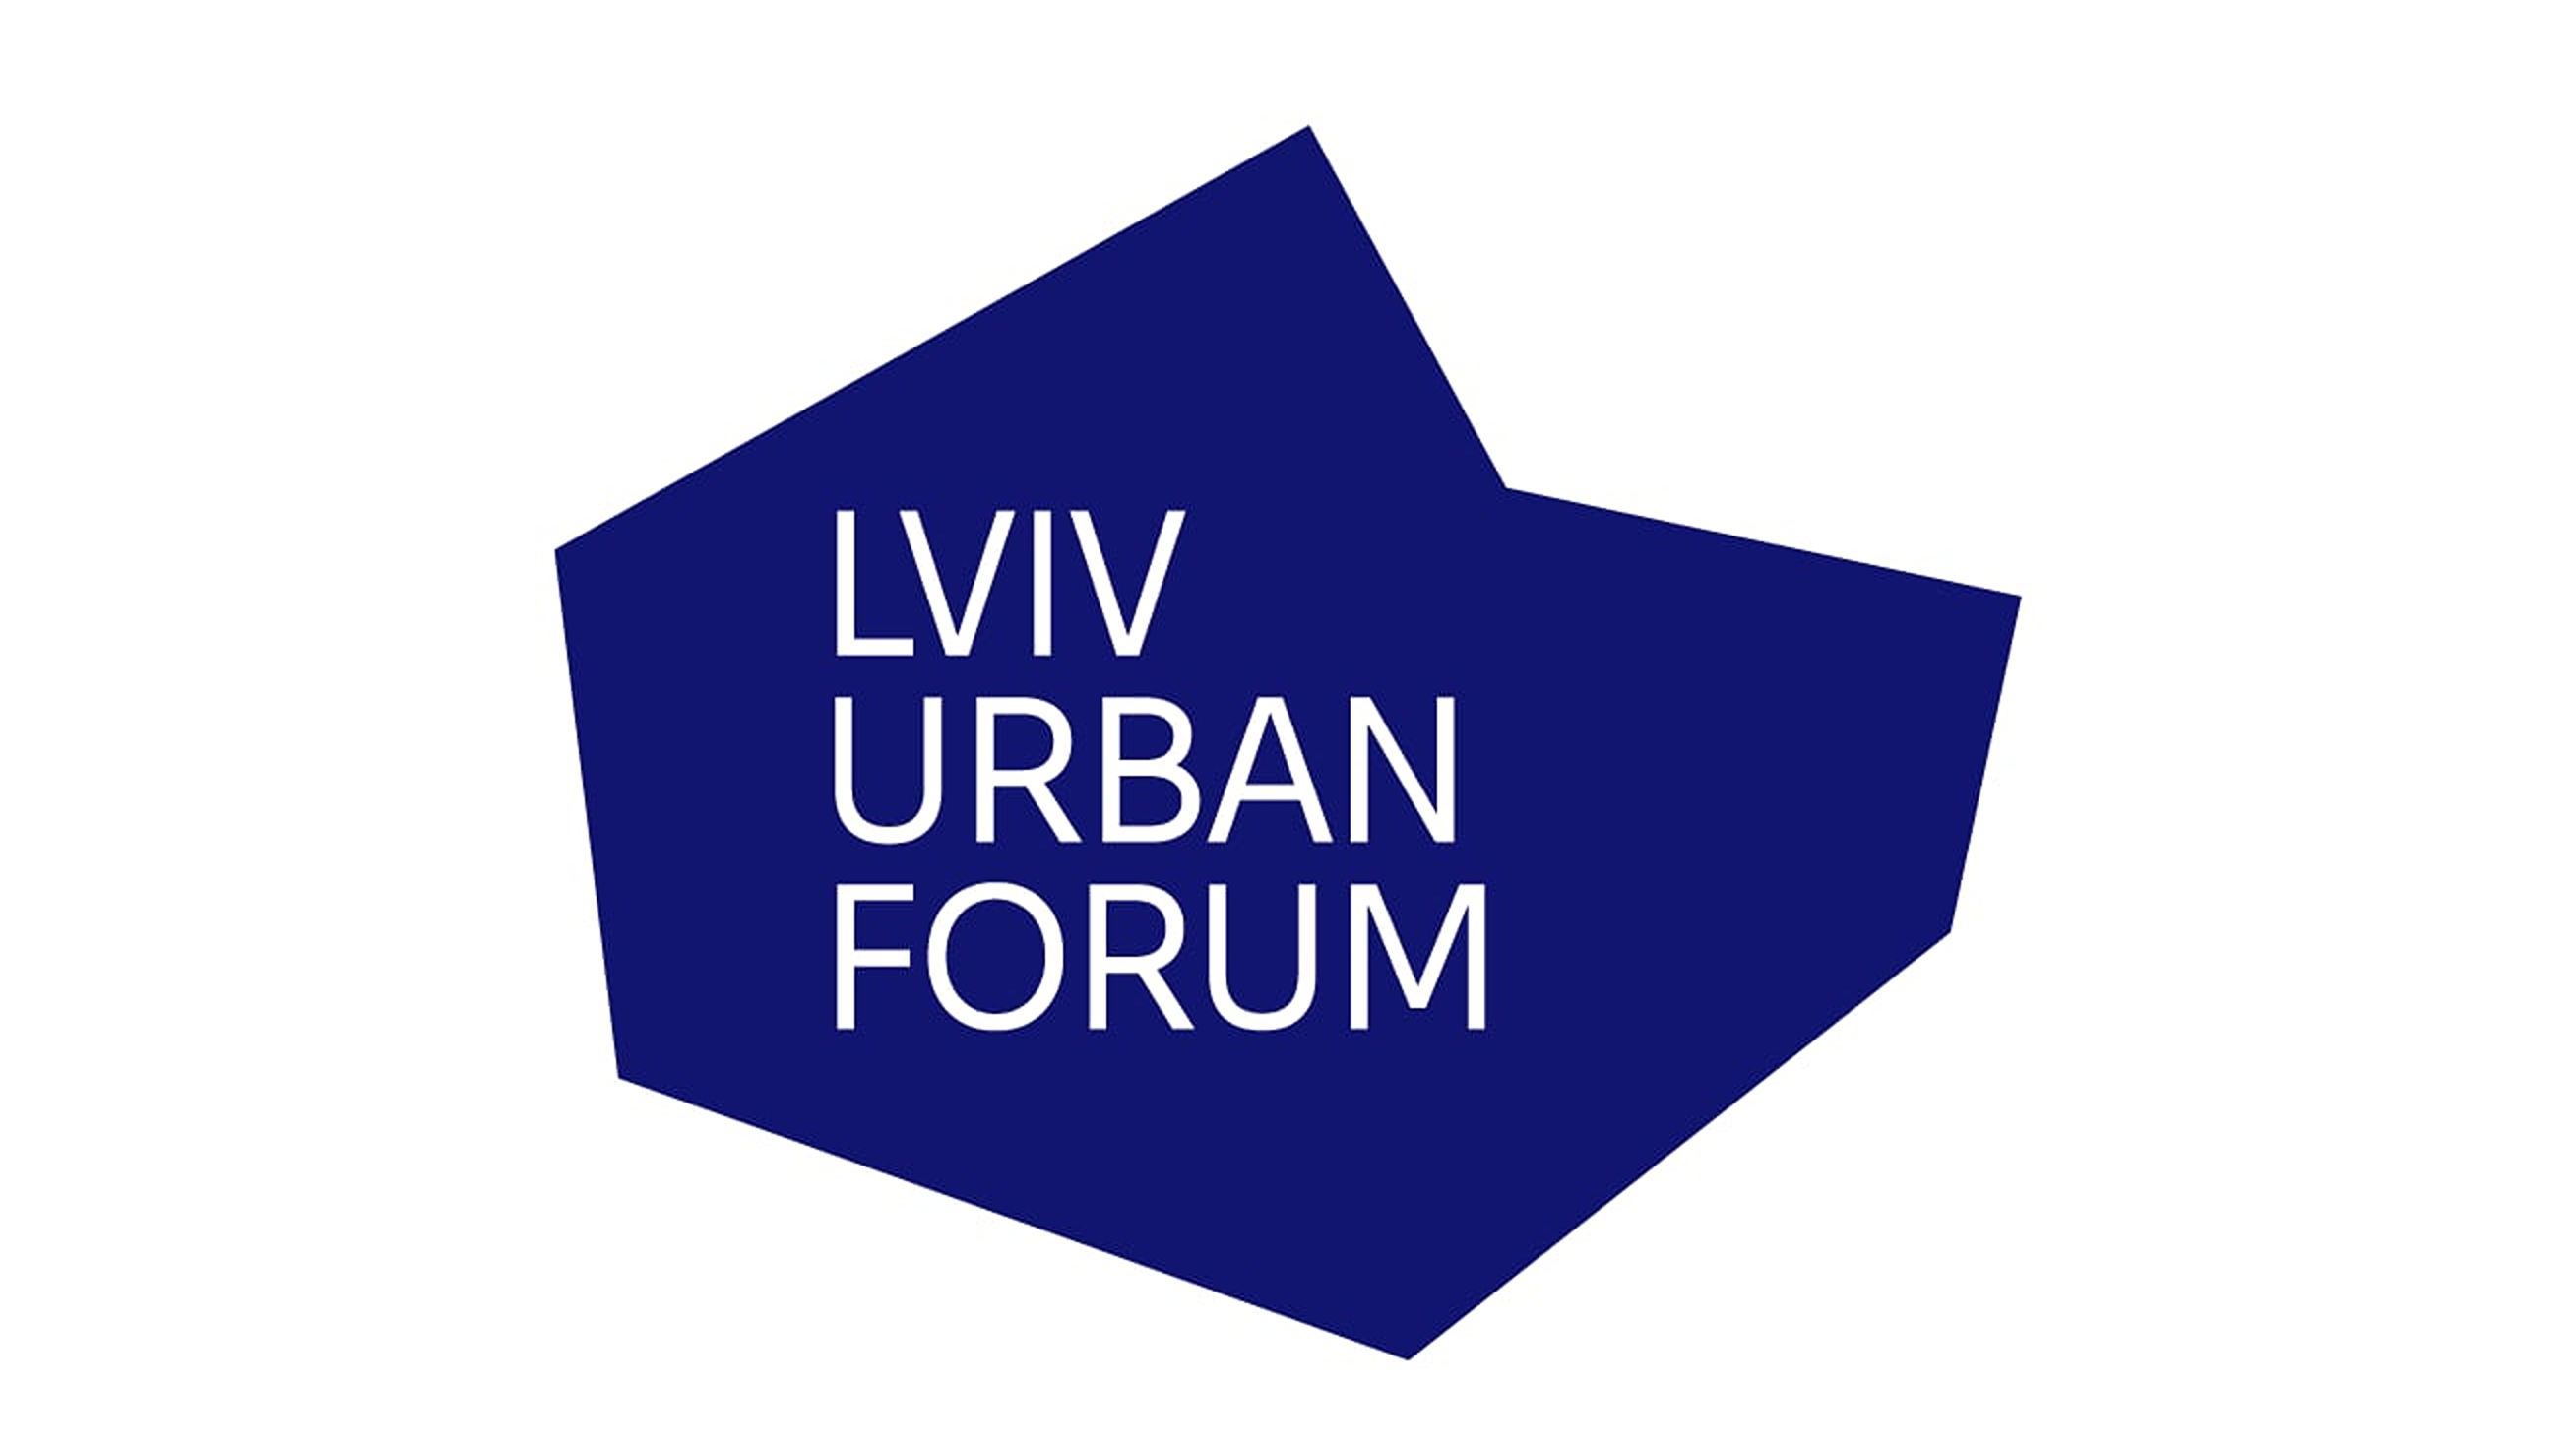 Das Lviv Urban Forum bringt Expert*innen zusammen und sammelt gute Praxisbeispiele in der Stadtplanung.